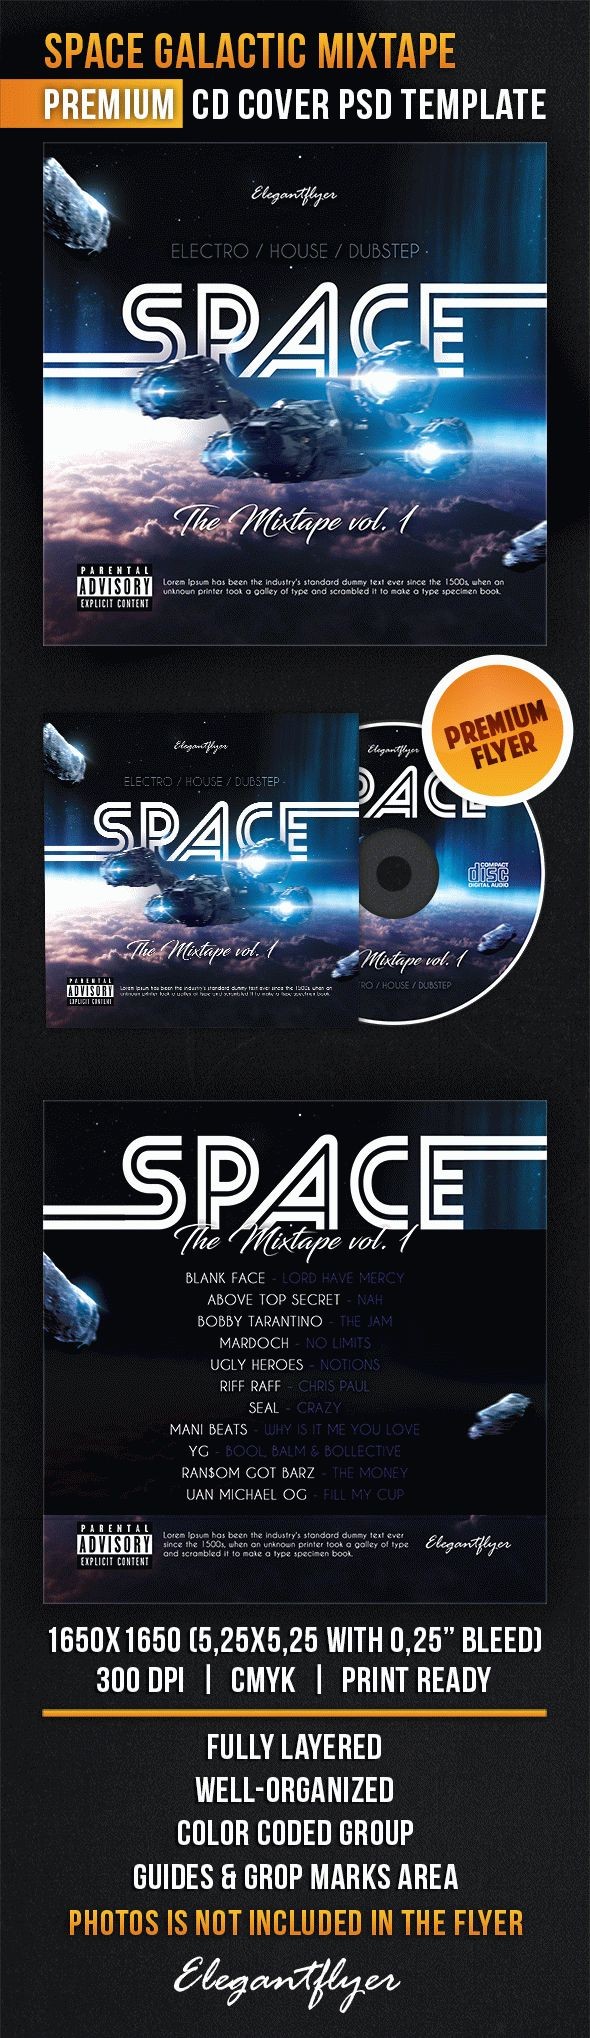 Mixtape kosmicznych przestrzeni by ElegantFlyer